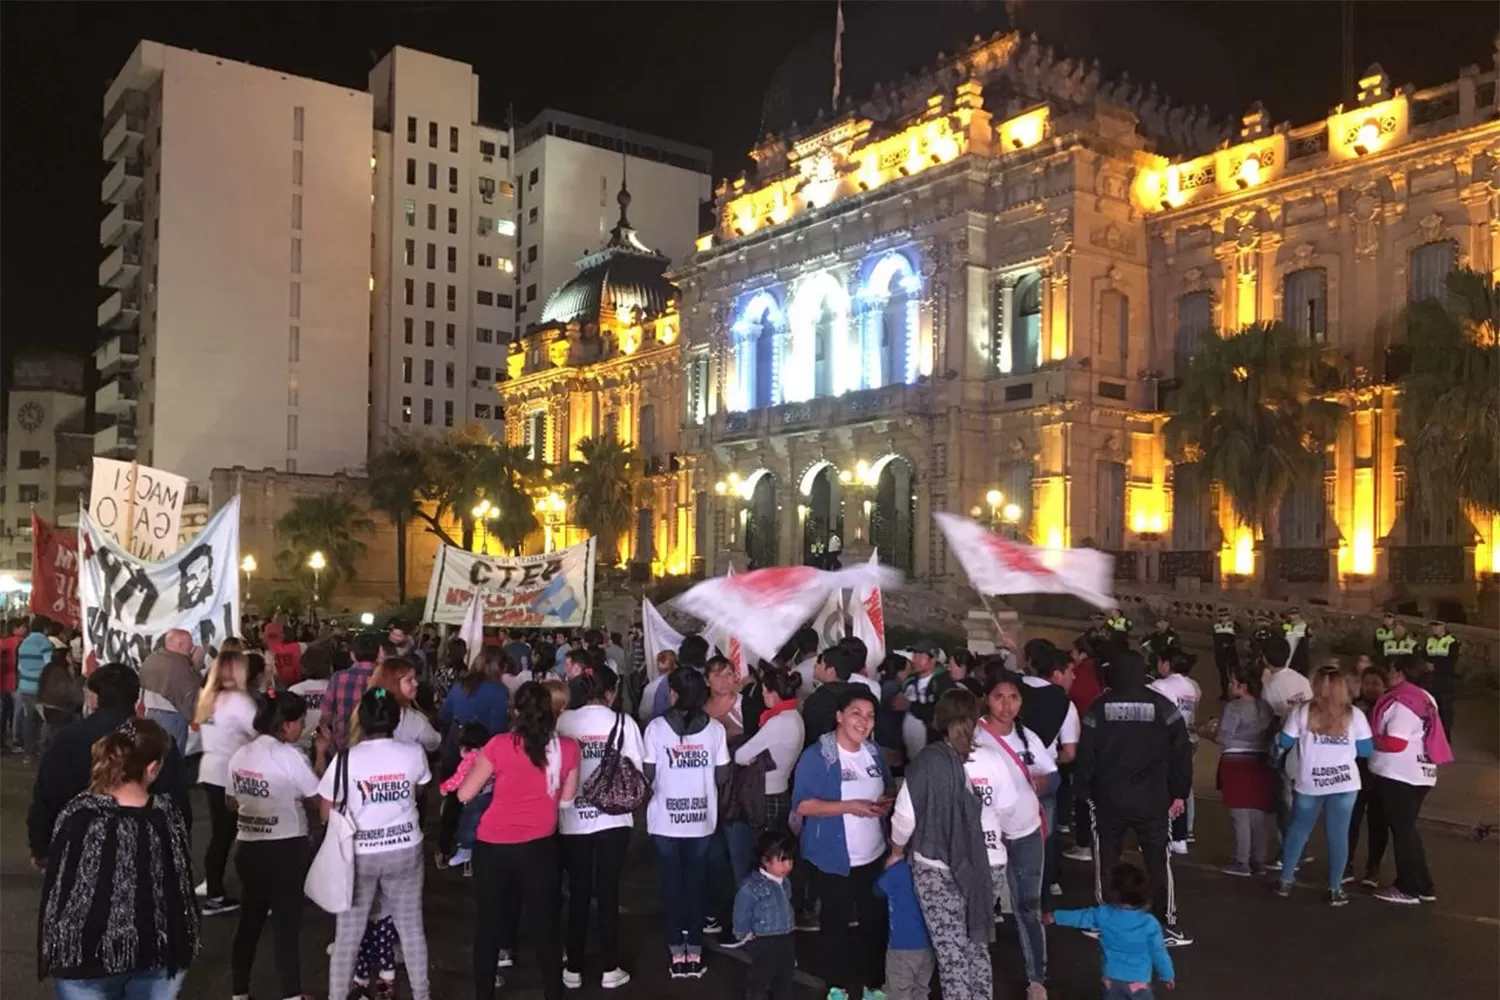 EN PLAZA INDEPENDENCIA. Tucumano protestan contra la política de Macri.